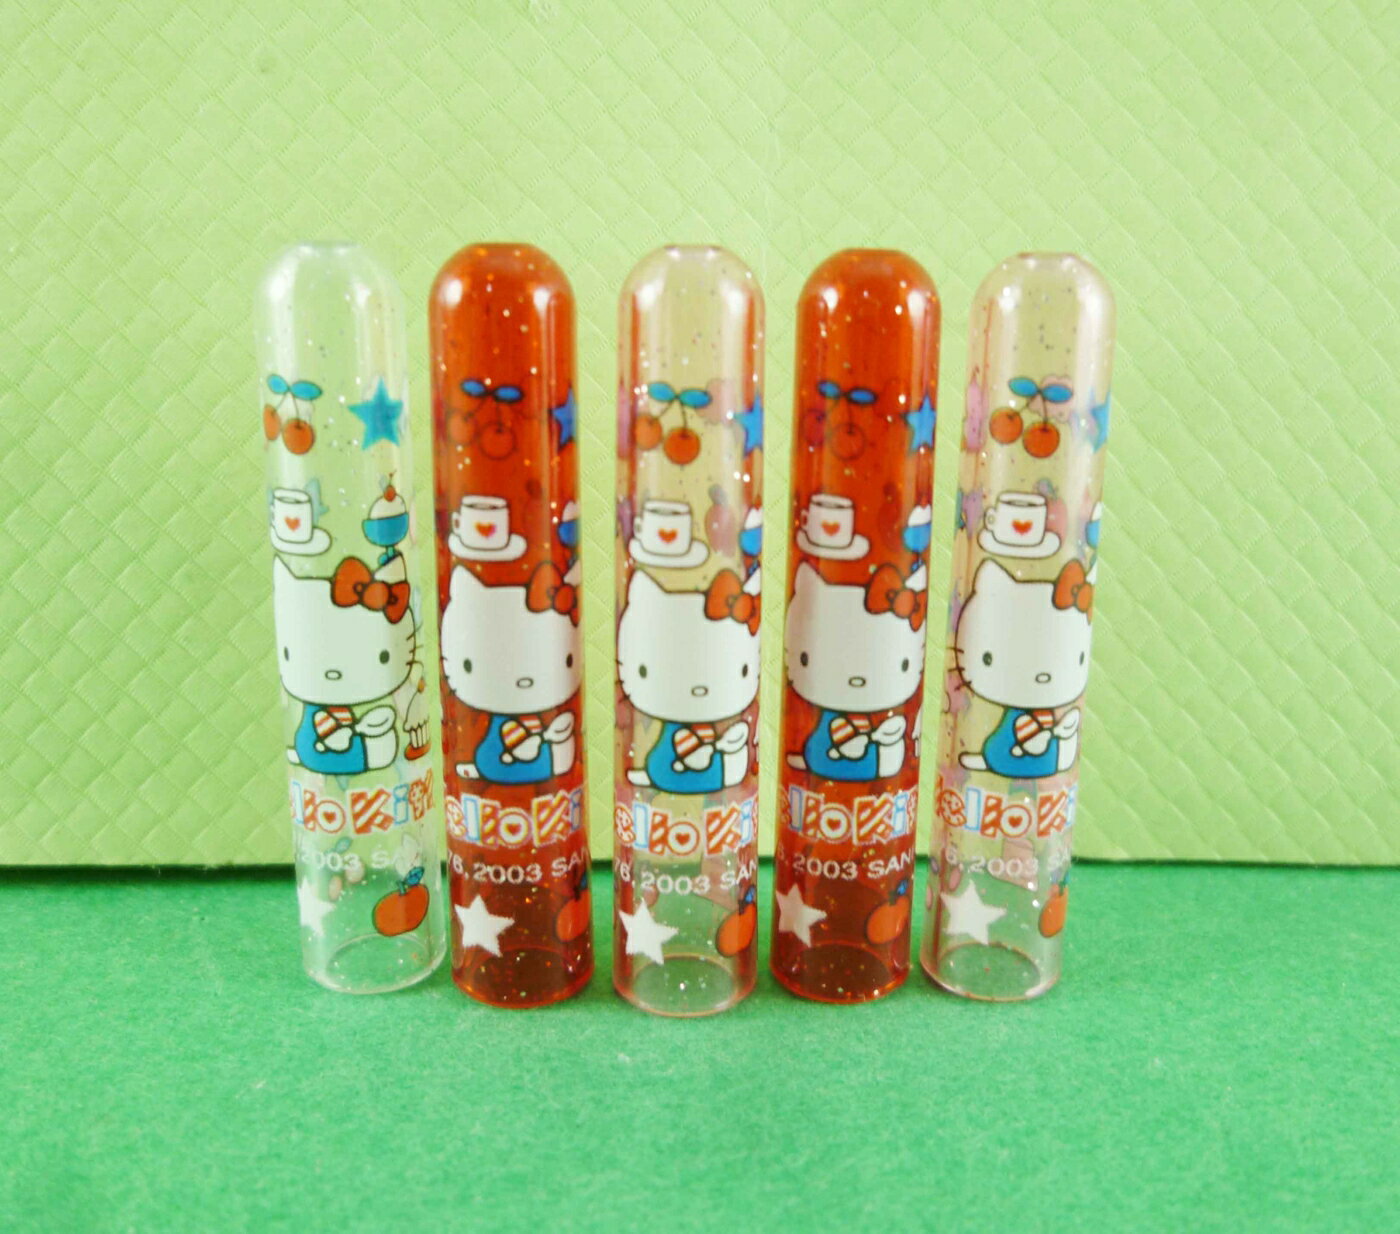 【震撼精品百貨】Hello Kitty 凱蒂貓 鉛筆蓋-5入紅蛋糕圖案 震撼日式精品百貨